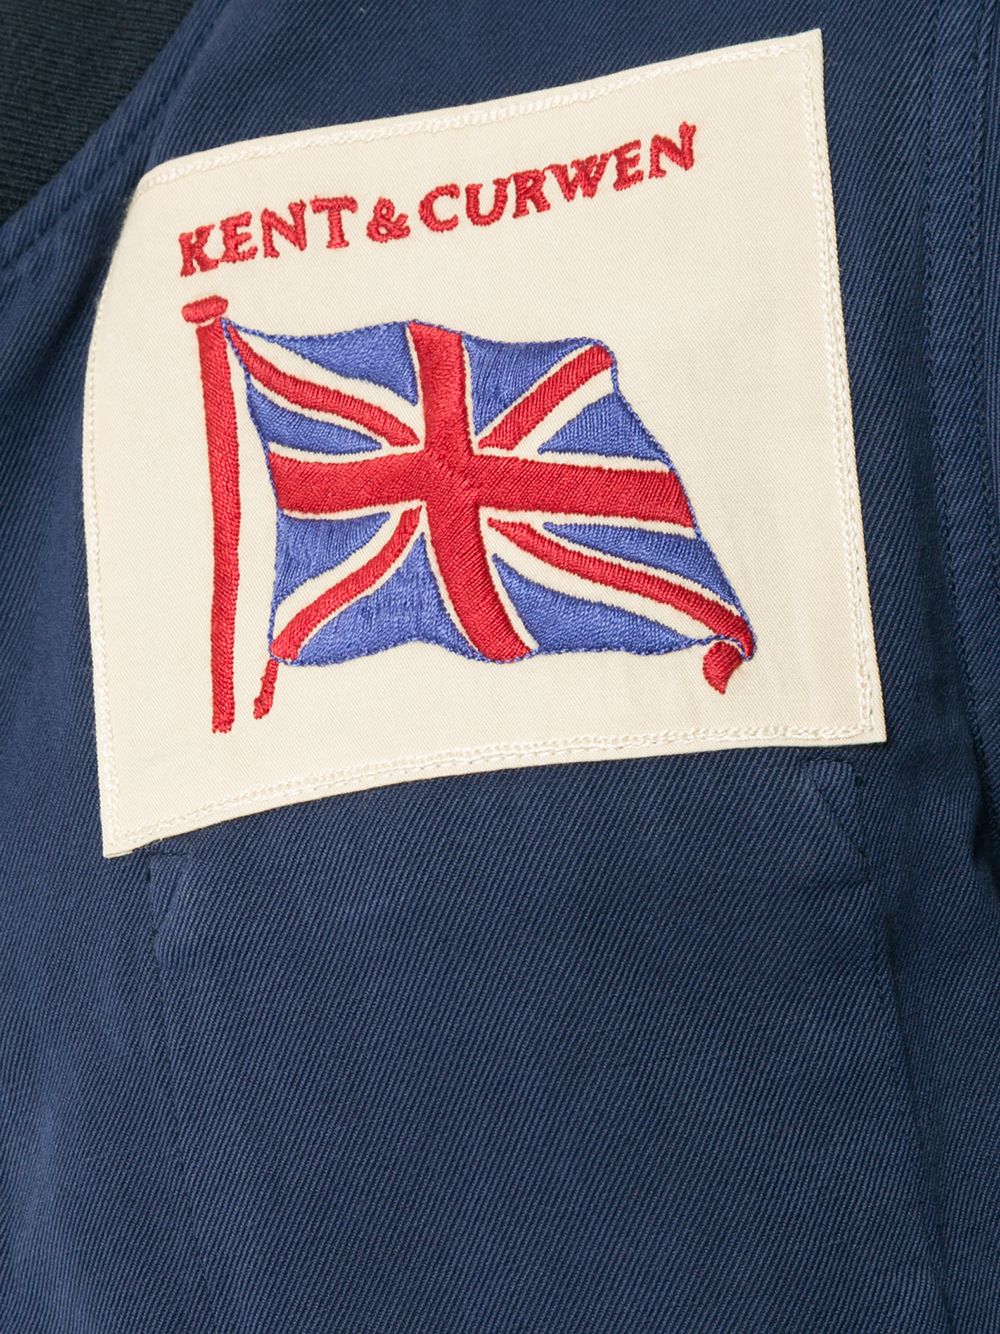 фото Kent & curwen куртка-бомбер с заплаткой с логотипом